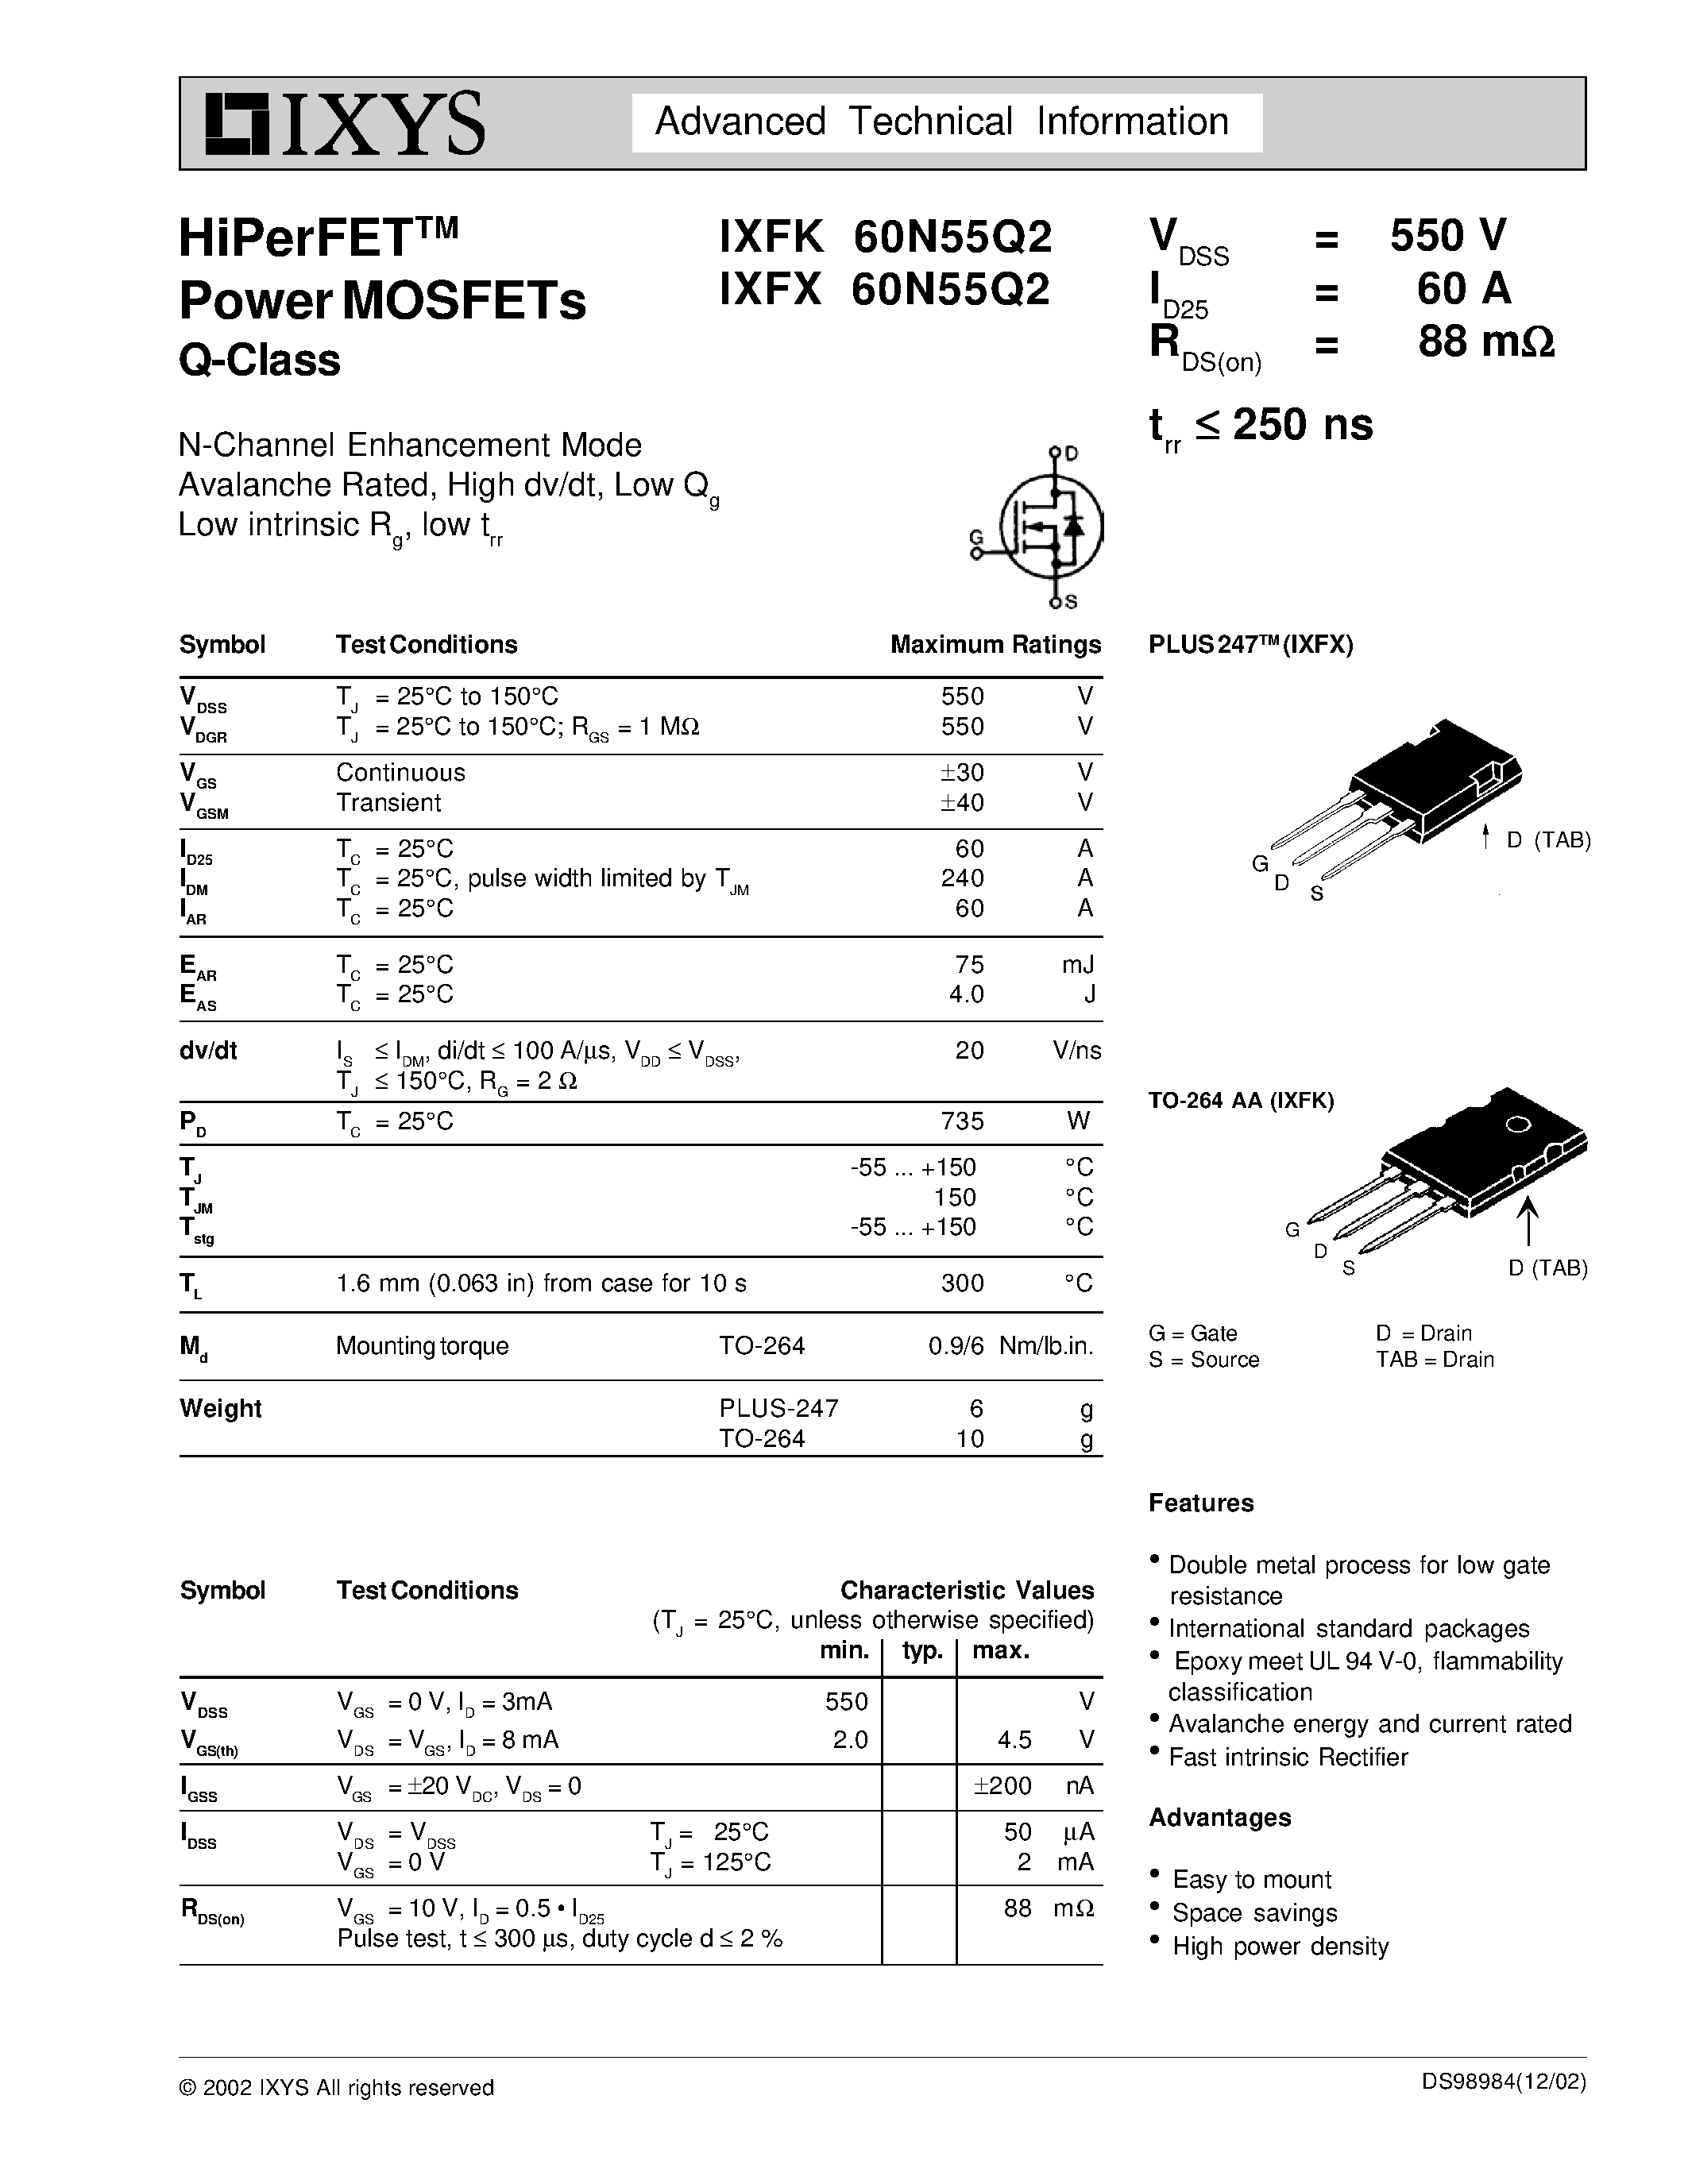 Даташит IXFK60N55Q2 - HiPerFET Power MOSFETs Q-Class страница 1